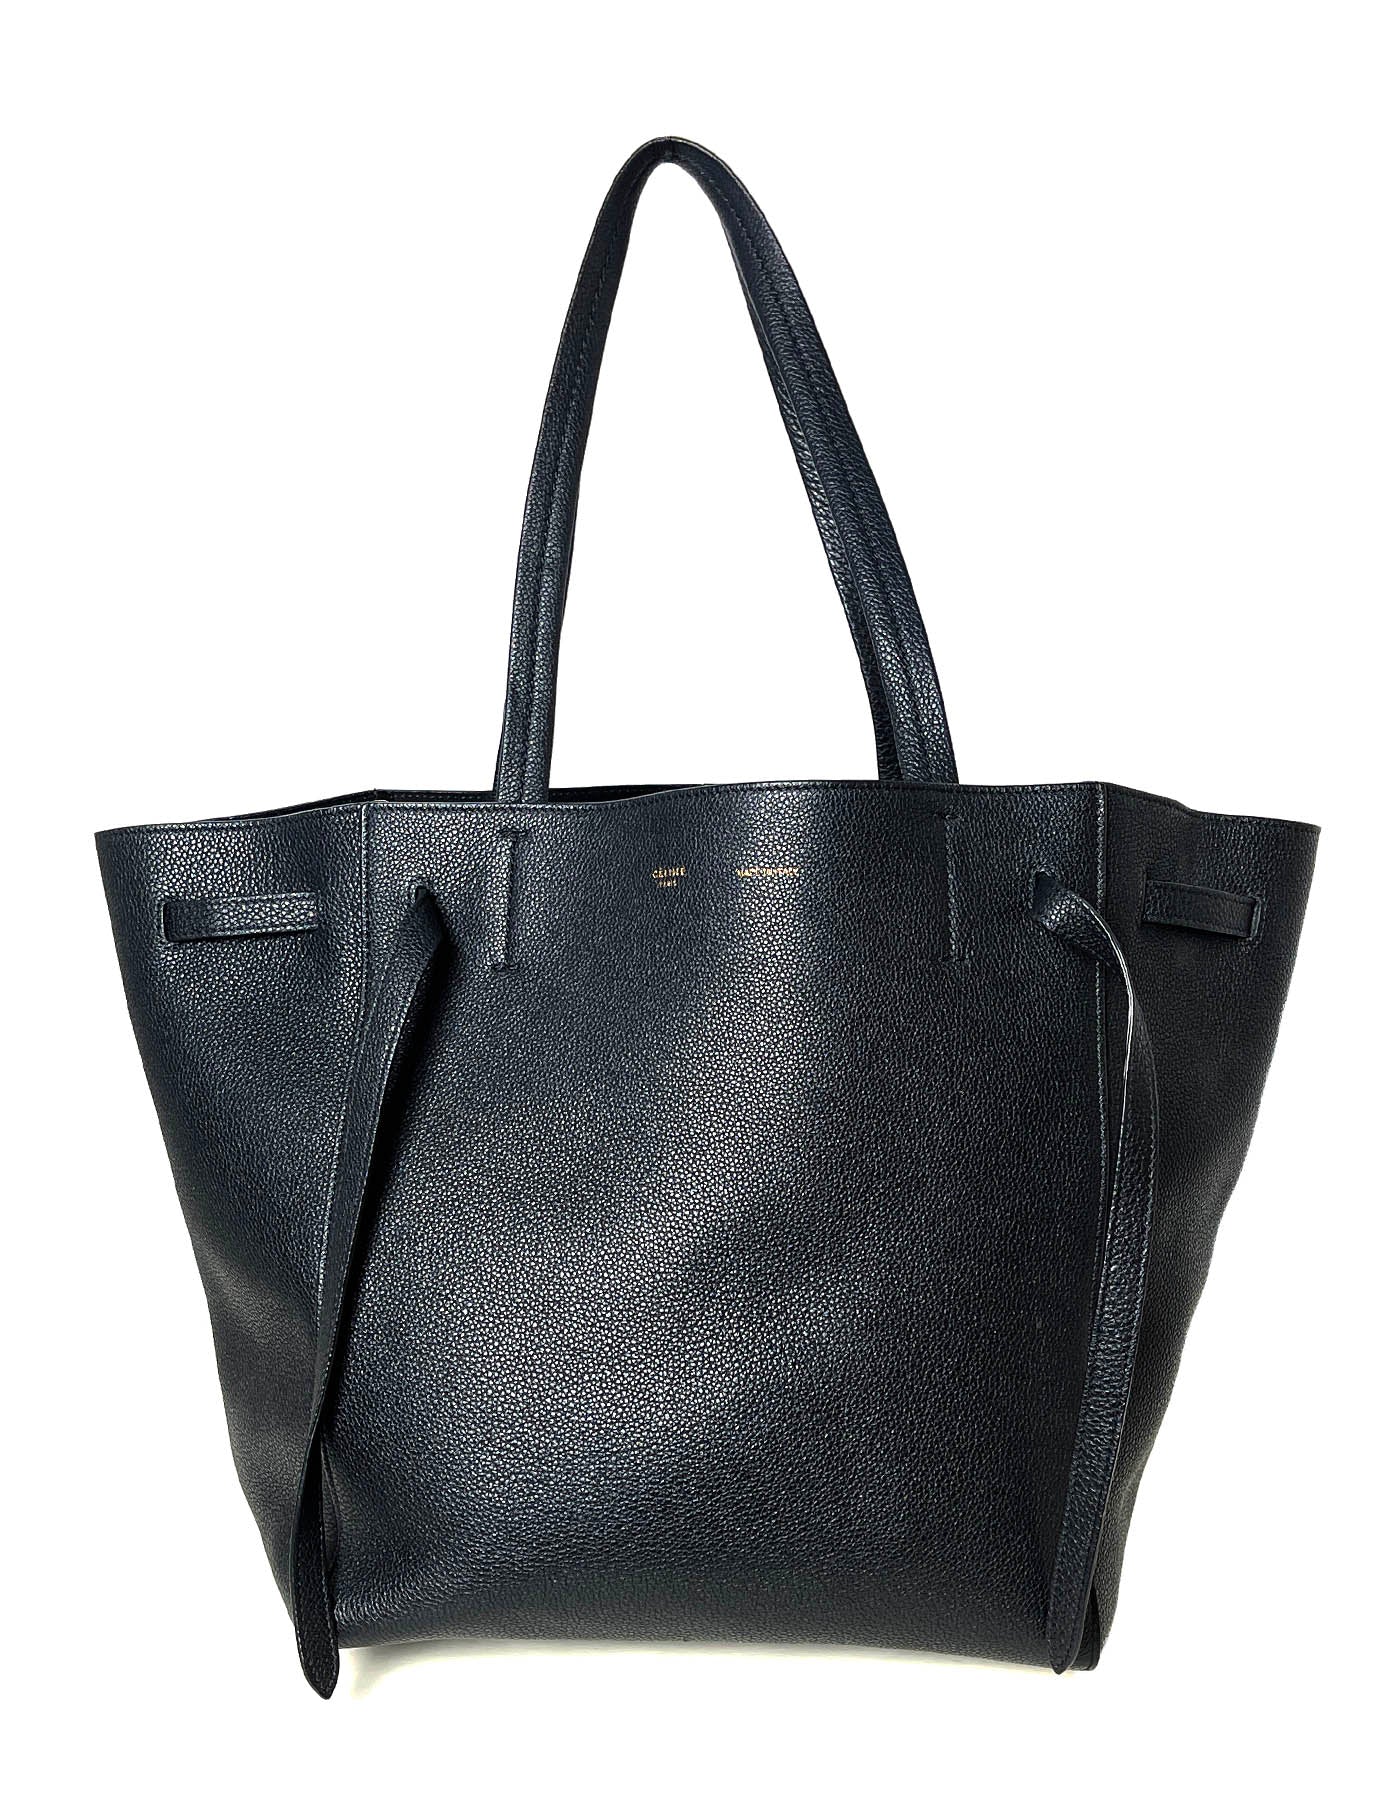 Celine Black Calfskin Leather Small Belt Cabas Phantom Tote Bag